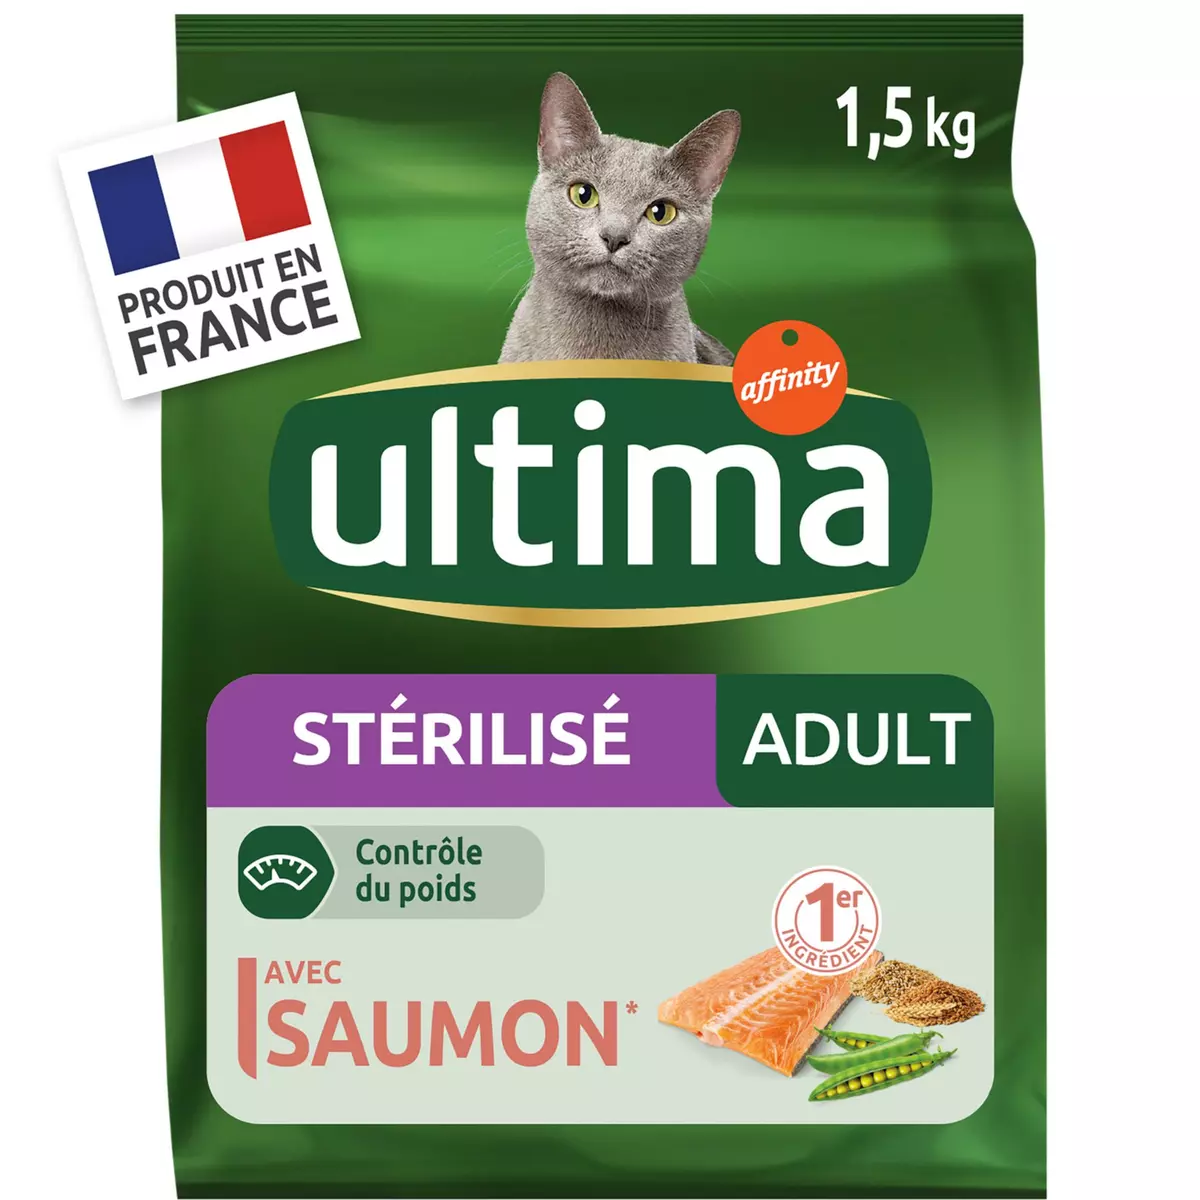 Acheter Purina One Croquettes spéciale chat stérilisé, saumon, 1,5kg